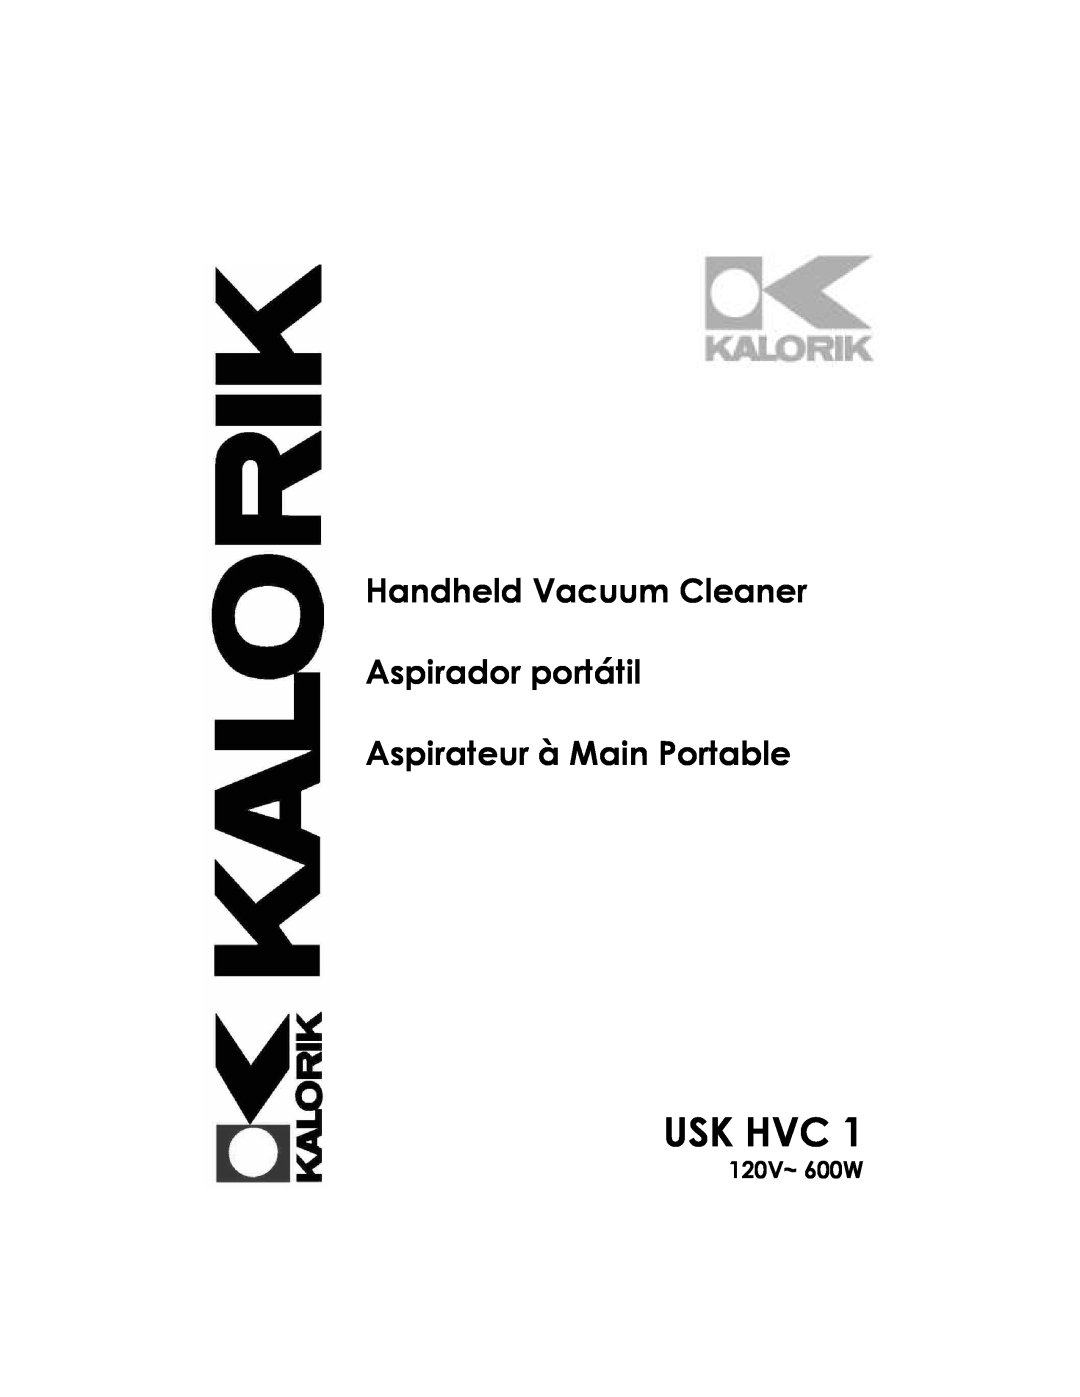 Kalorik USK HVC 1 - 060104 manual Usk Hvc, 120V~ 600W, Handheld Vacuum Cleaner Aspirador portátil 